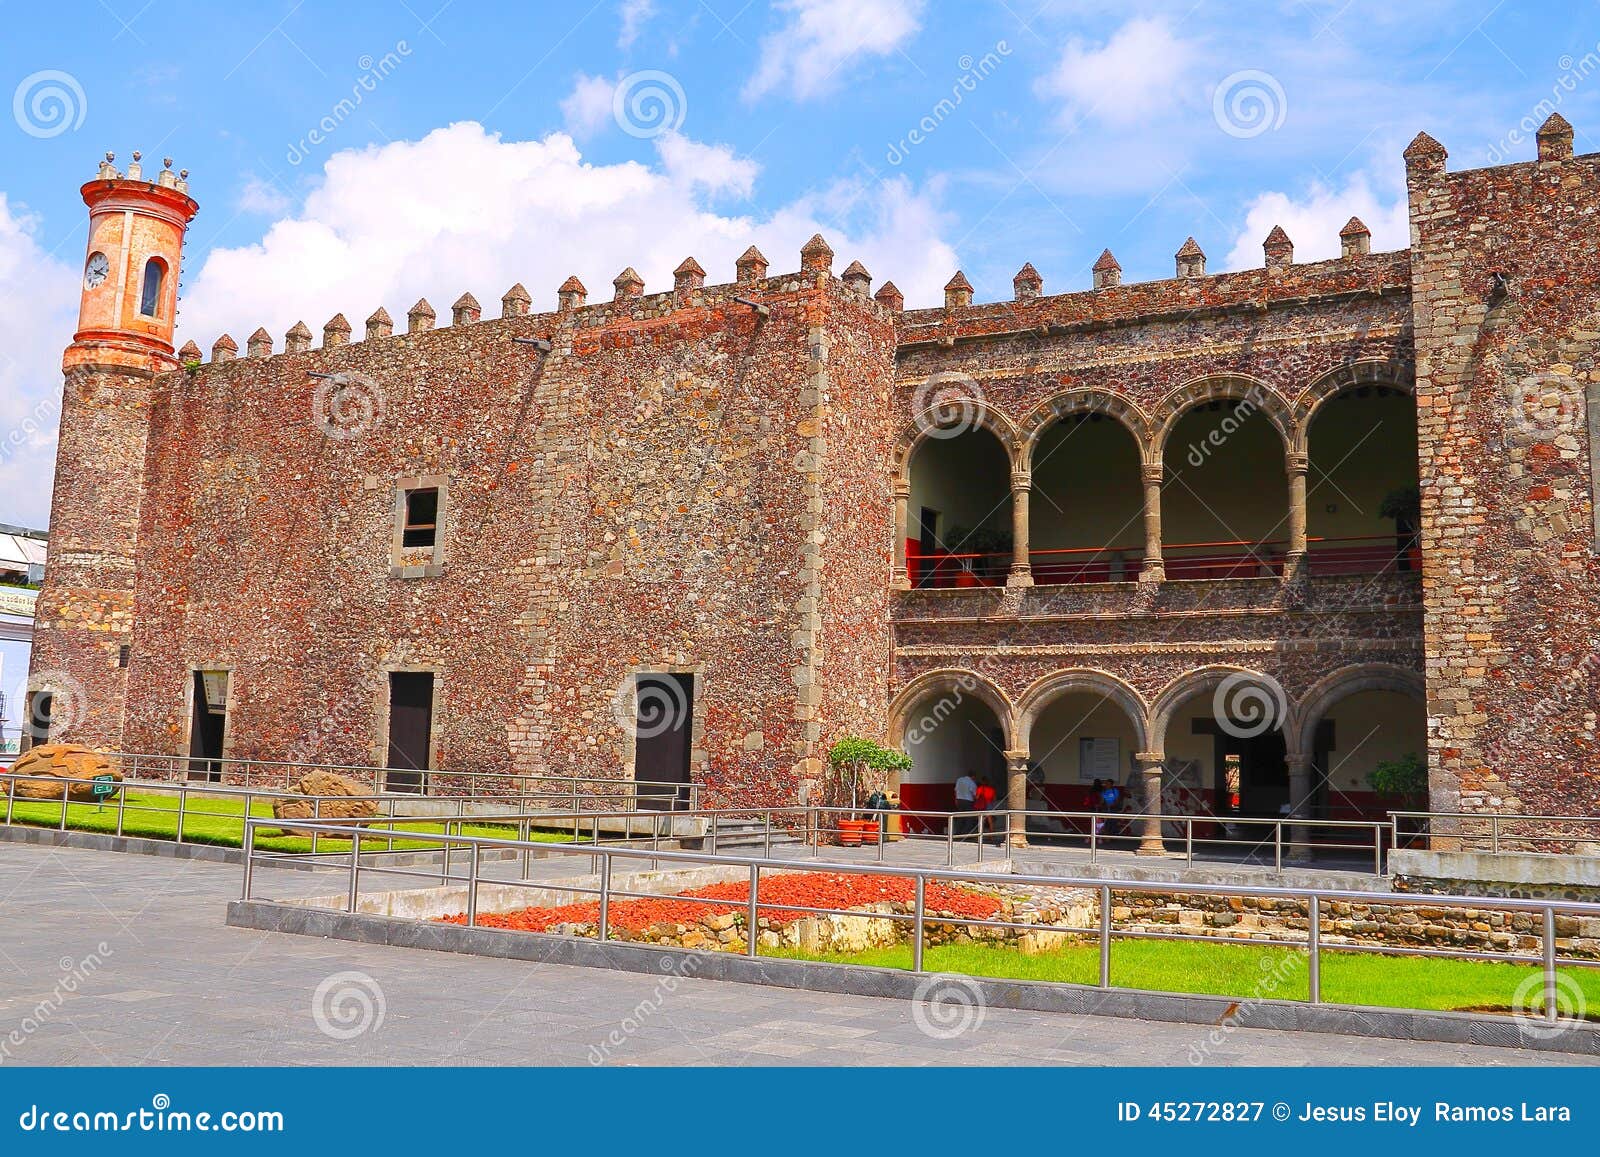 cortes palace in cuernavaca, morelos, mexico ii